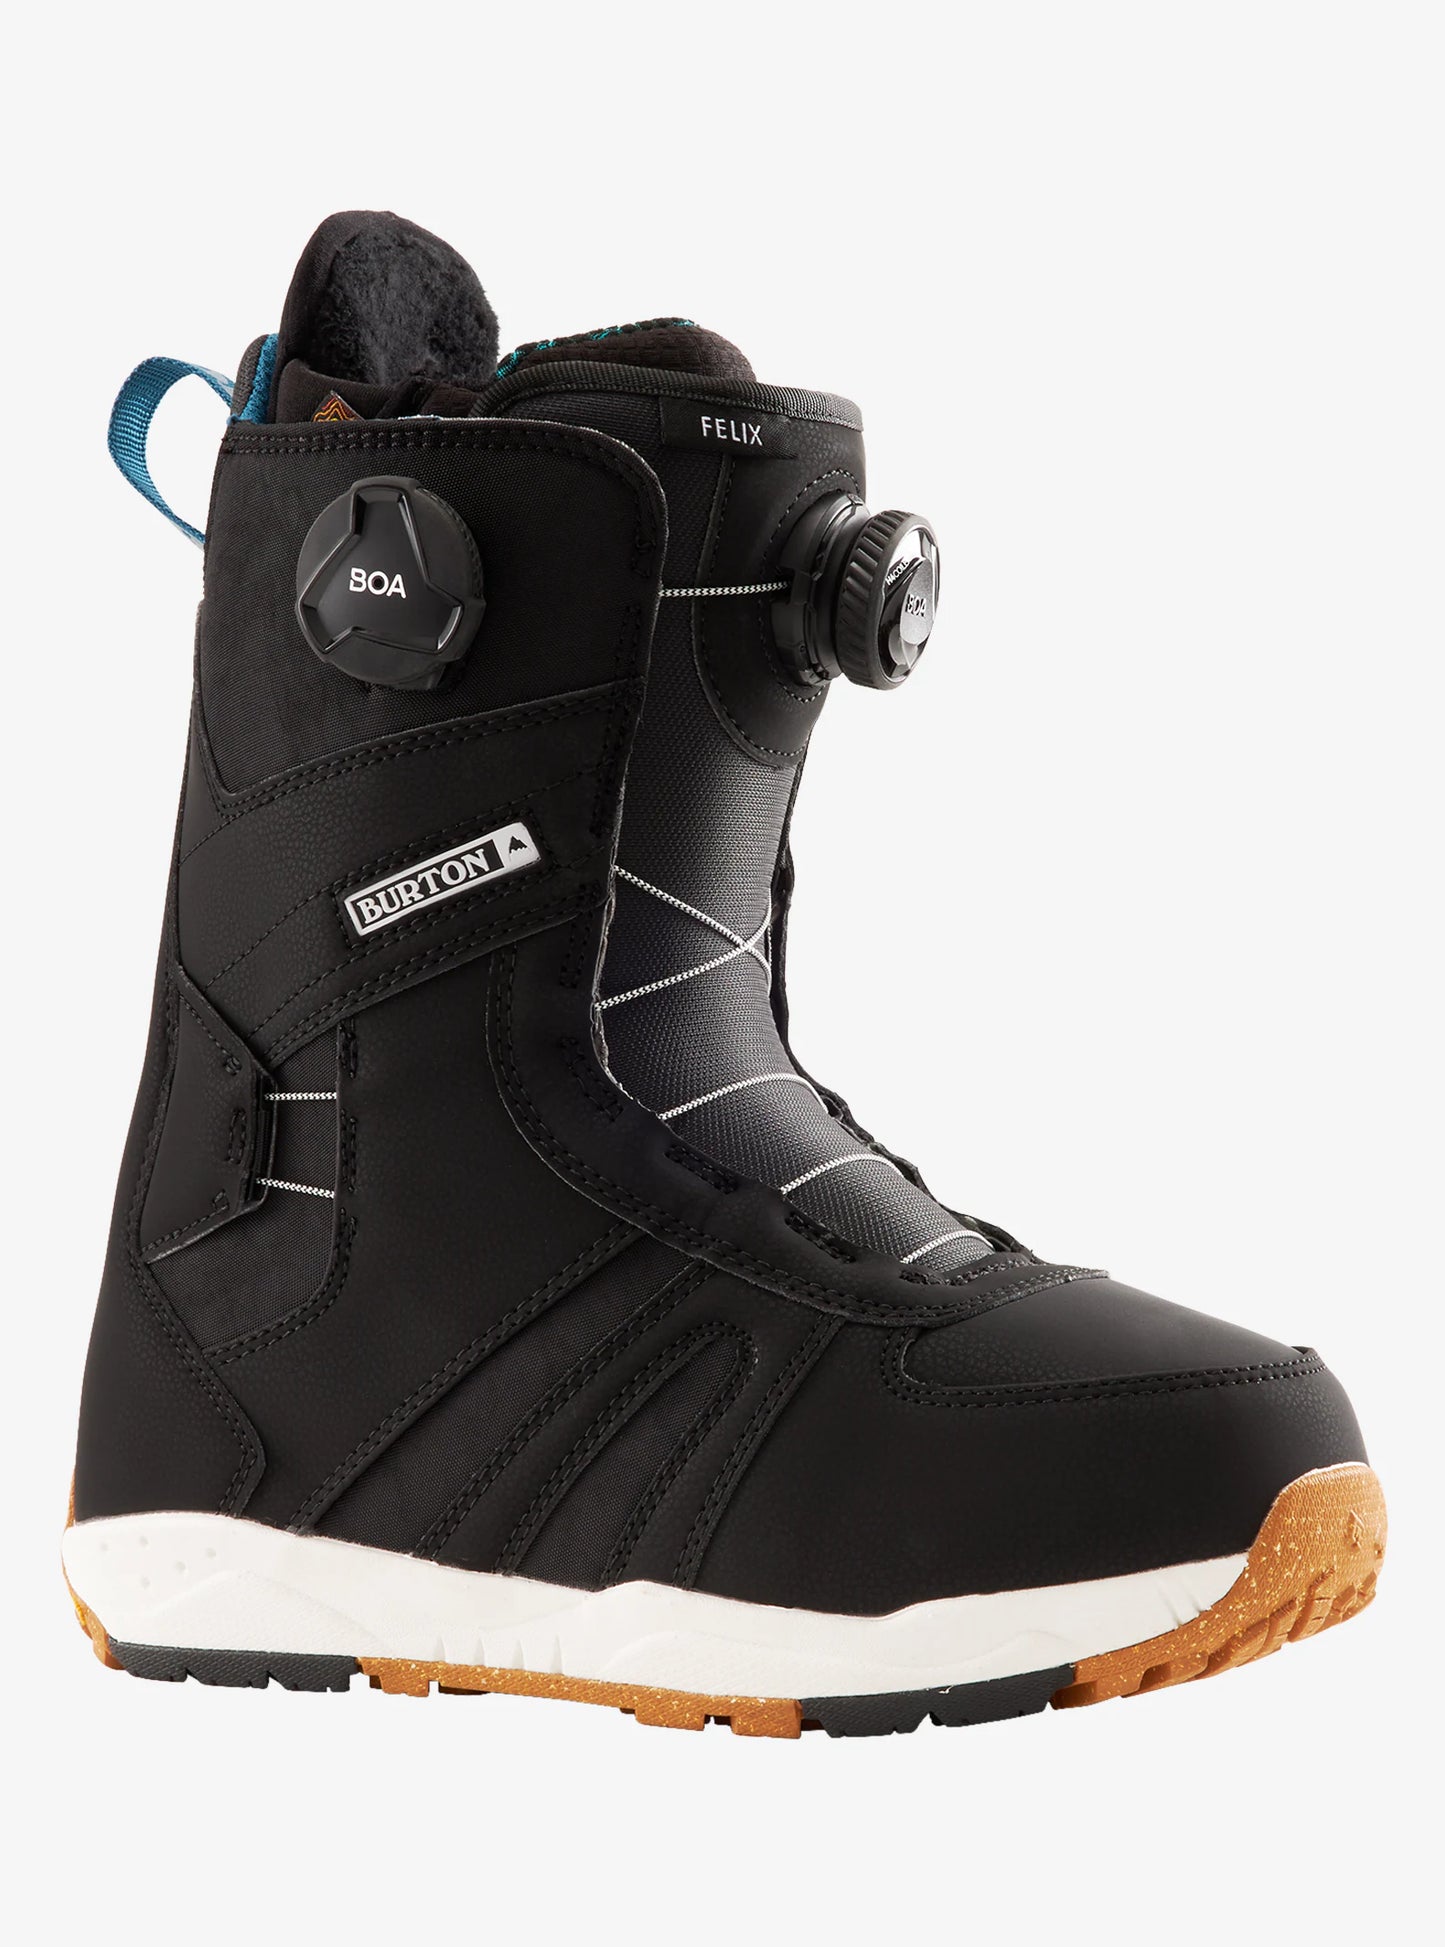 Burton Felix BOA Women's Snowboard Boots